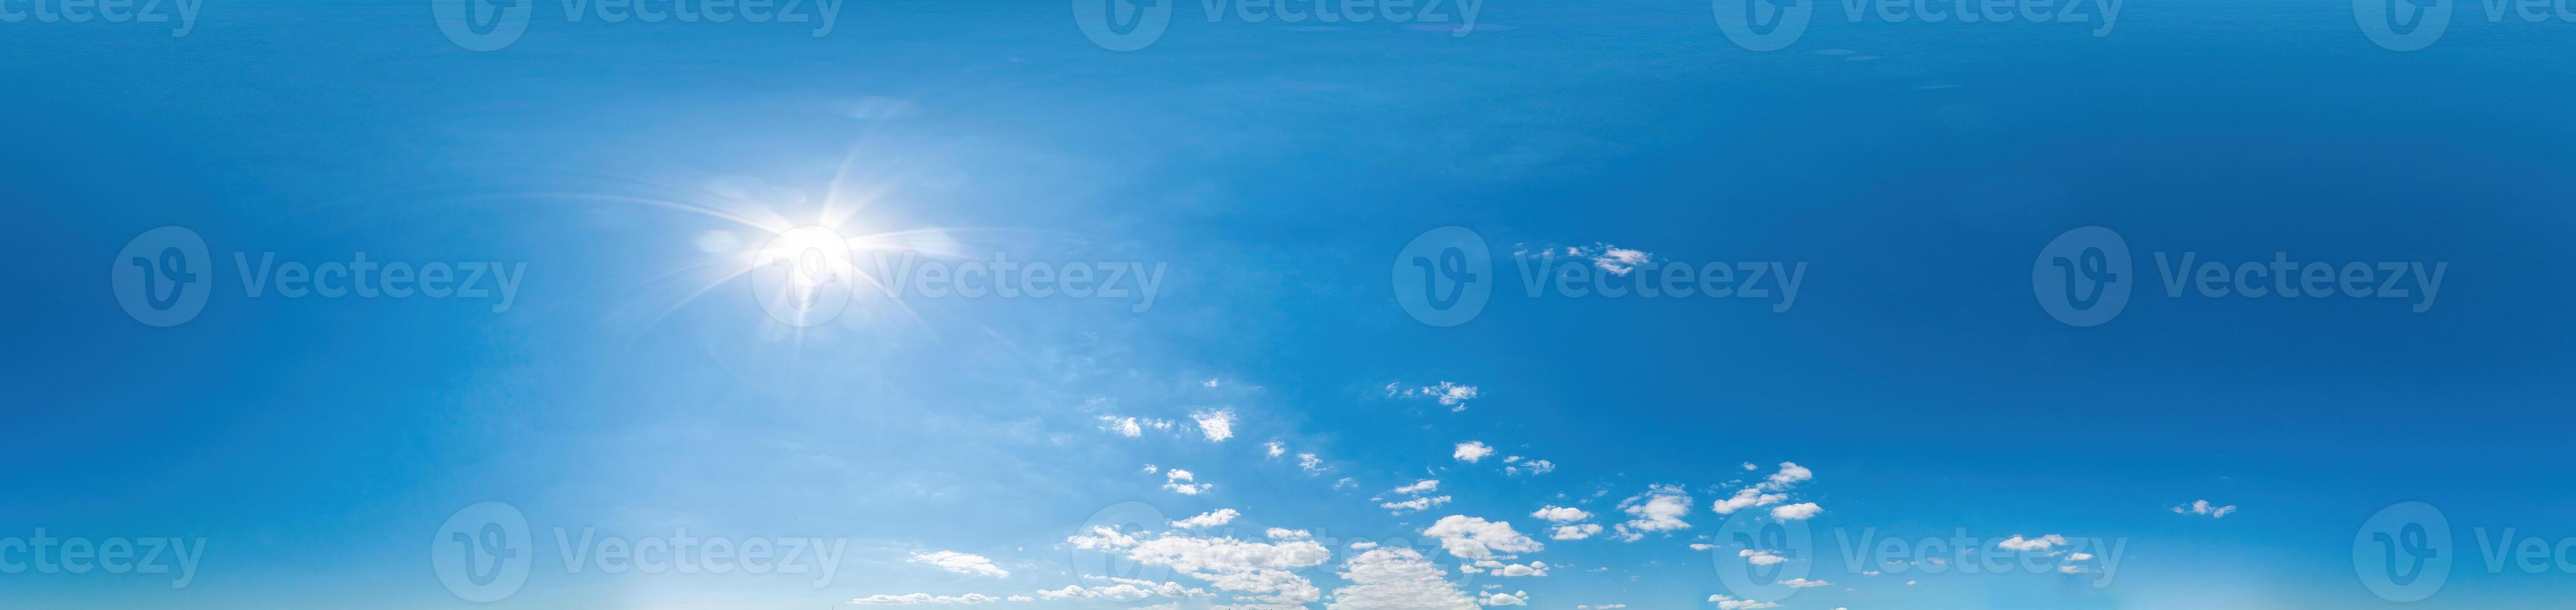 blauer Himmel mit leichten Wolken nahtloses Panorama im sphärischen äquirektangulären Format mit komplettem Zenit für den Einsatz in 3D-Grafiken, Spielen und für Composites in Luftdrohne 360-Grad-Panoramen als Himmelskuppel foto